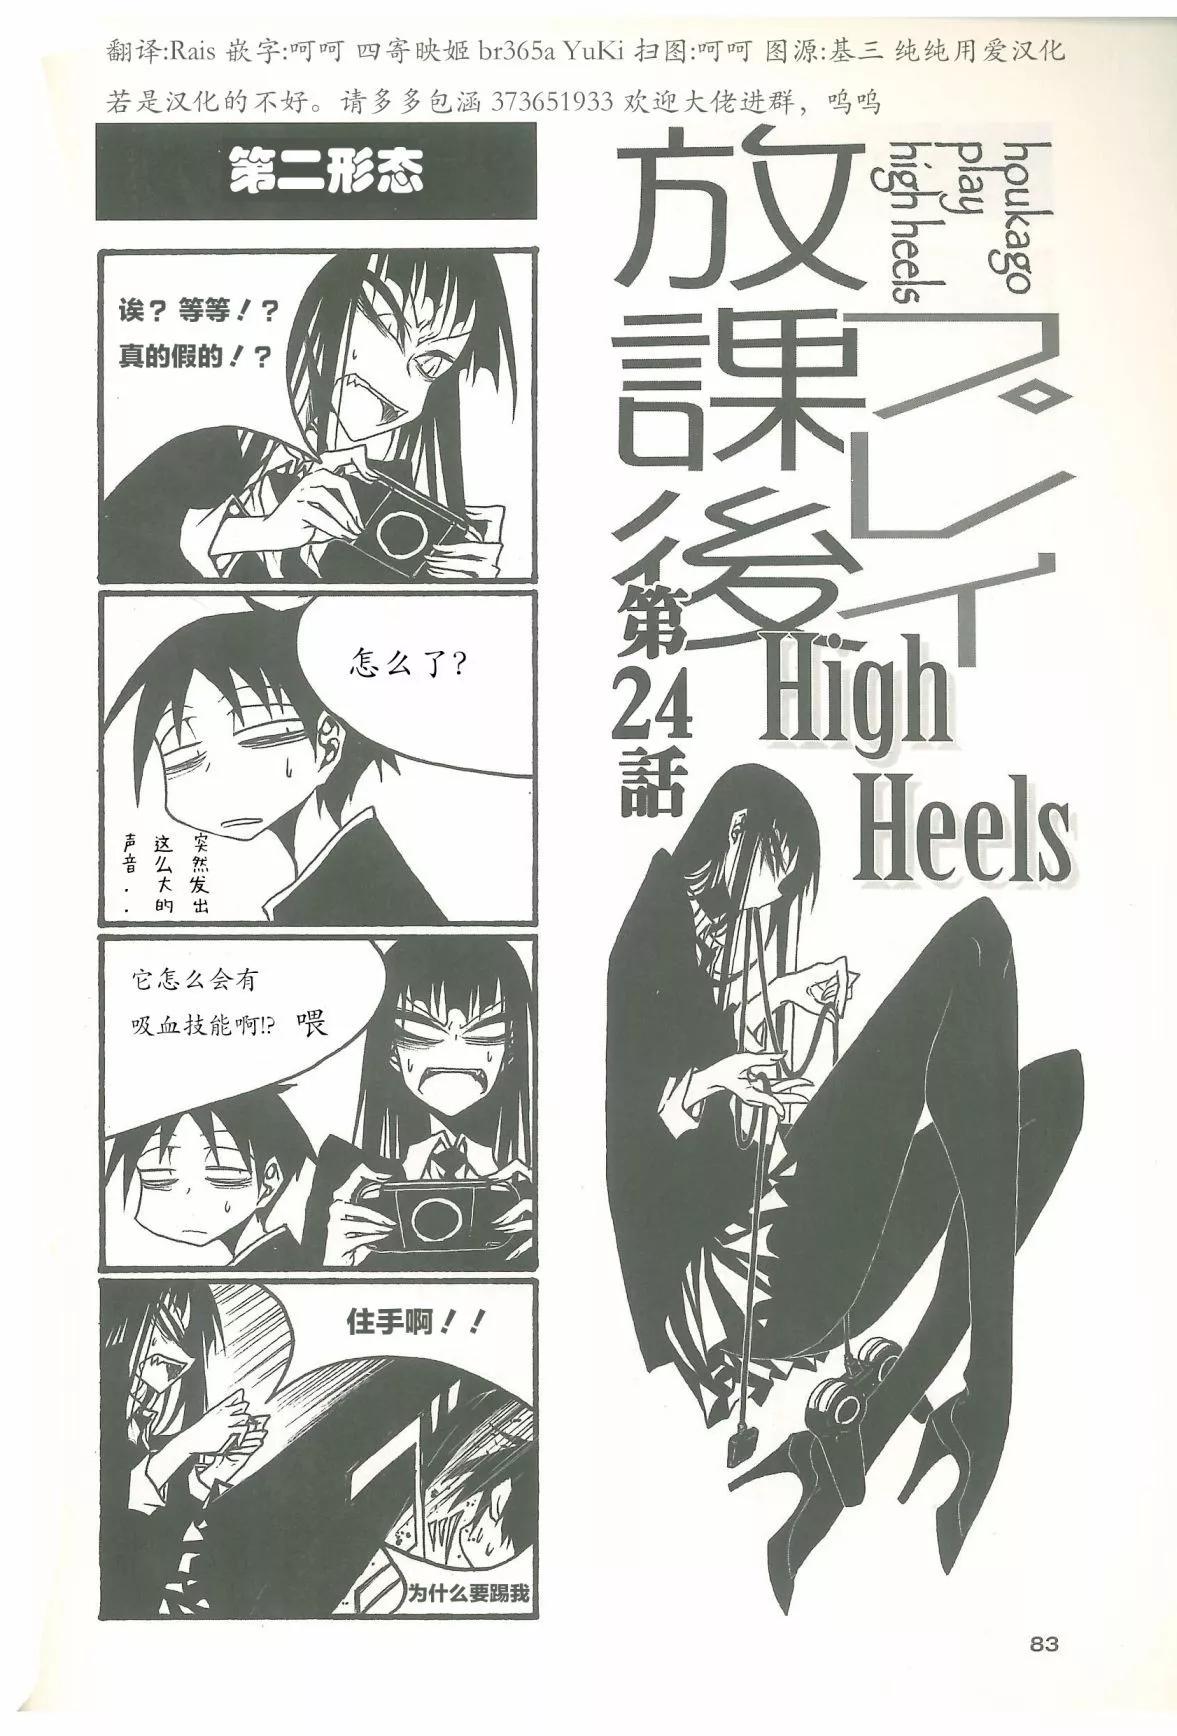 放學後PLAY - 放課後play high heels2 11卷 - 1